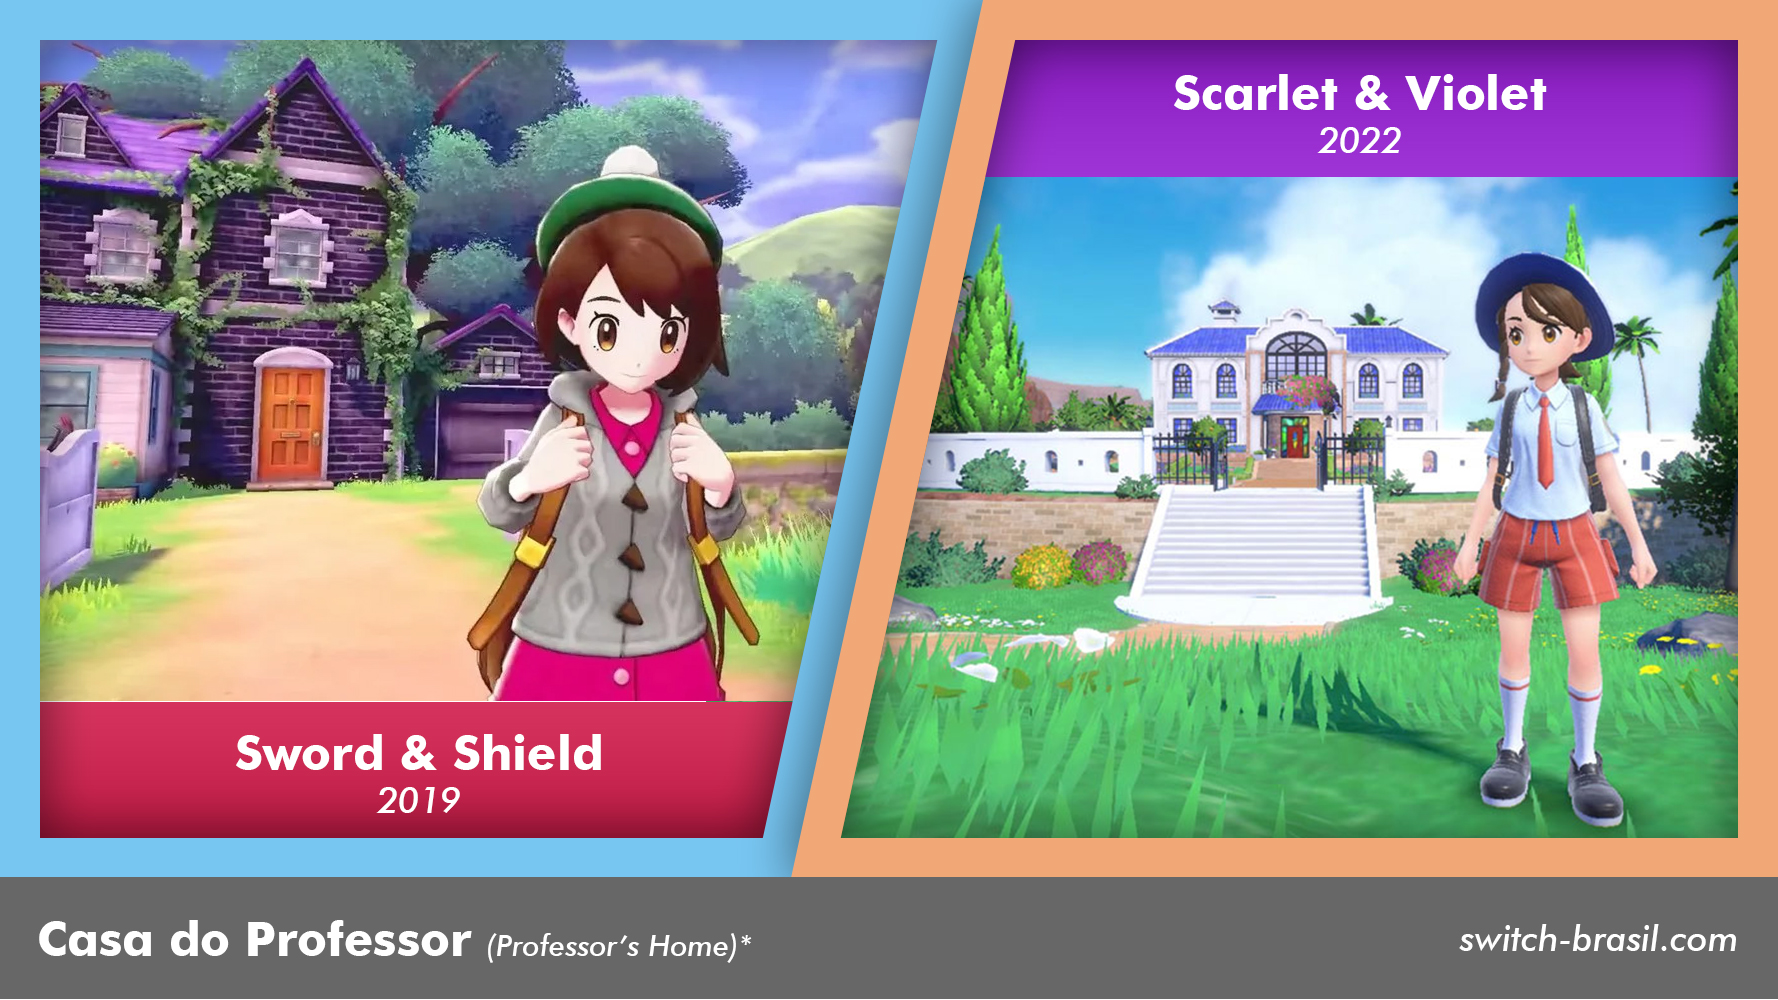 Pokémon Scarlet & Violet – Veja as principais mudanças da nova geração